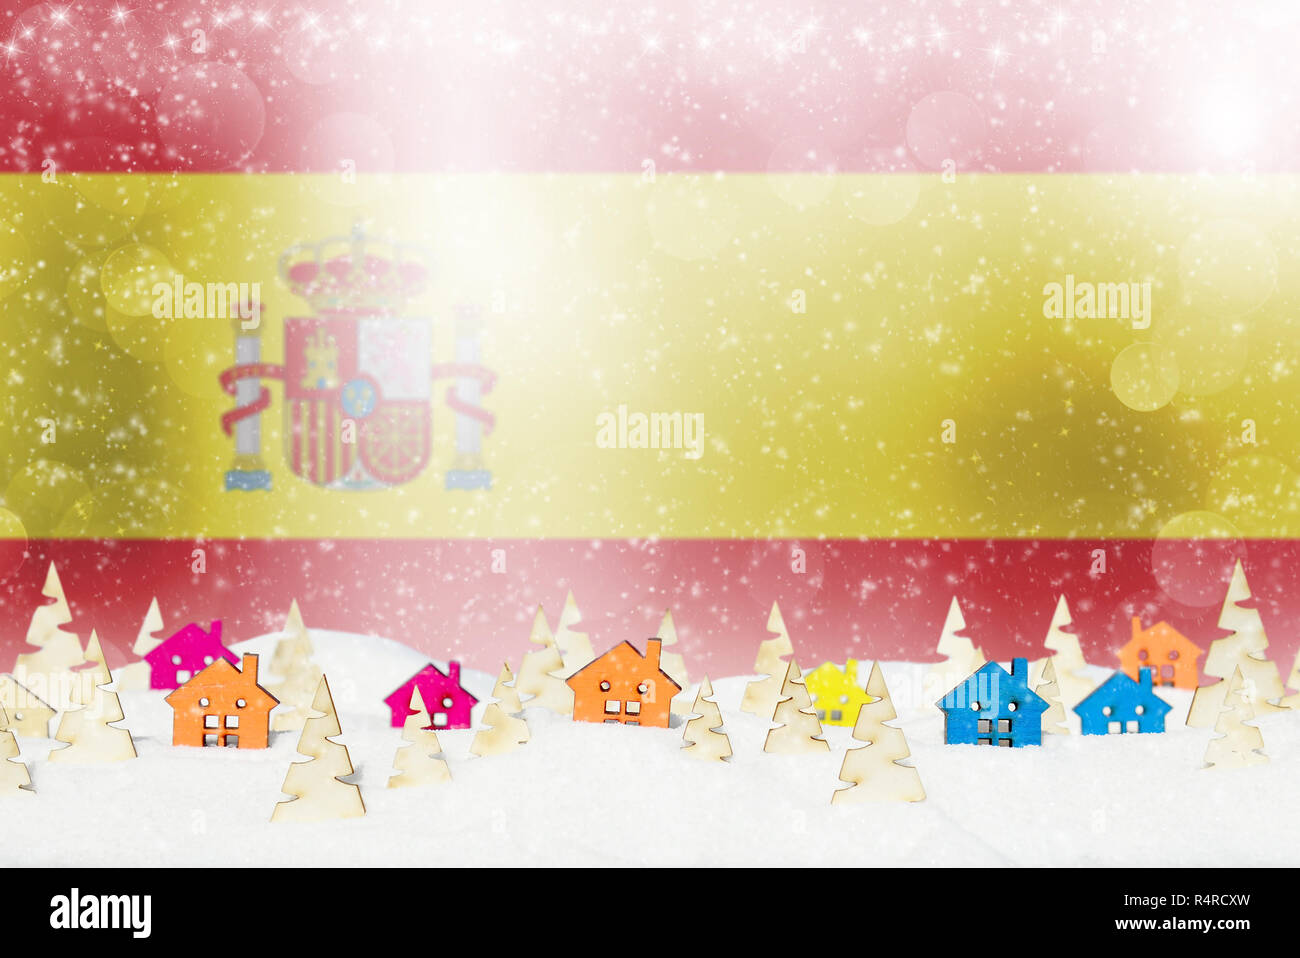 Weihnachten Hintergrund mit spanischer Flagge, kleine Holzhäuser, Weihnachtsbäume und Schnee. Stockfoto